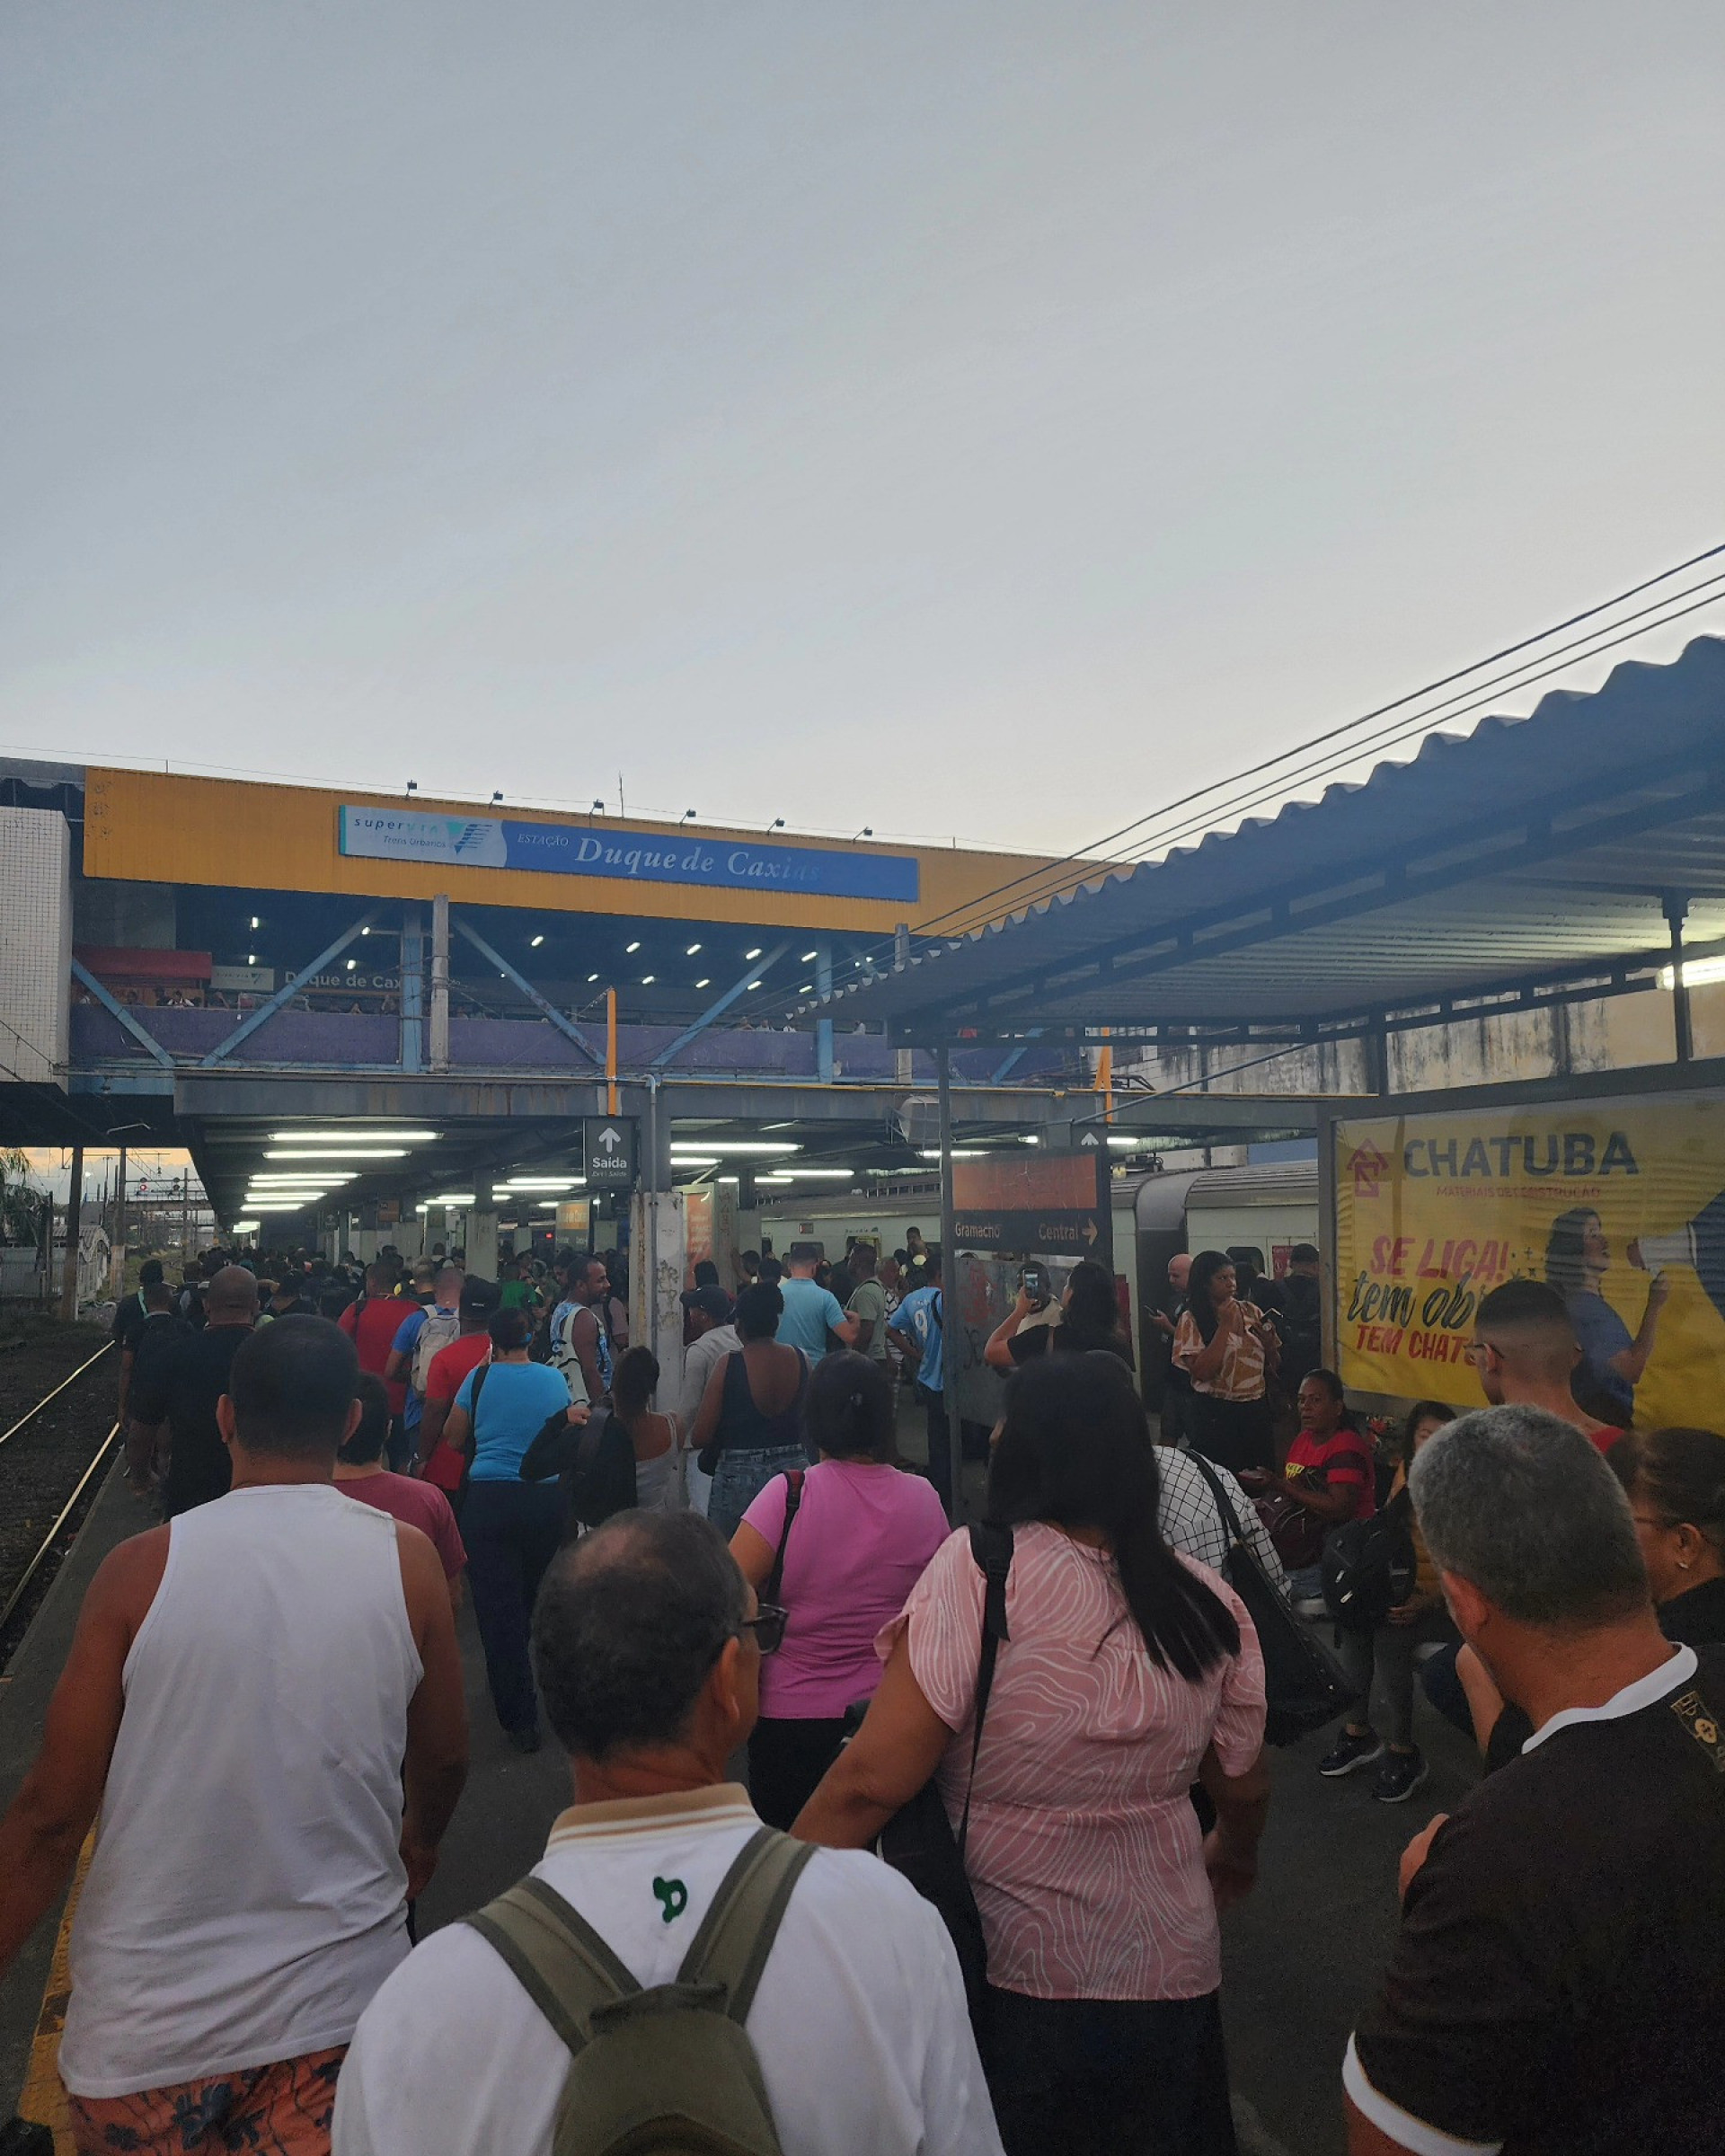 Passengers face disruption at Duque de Caxias station